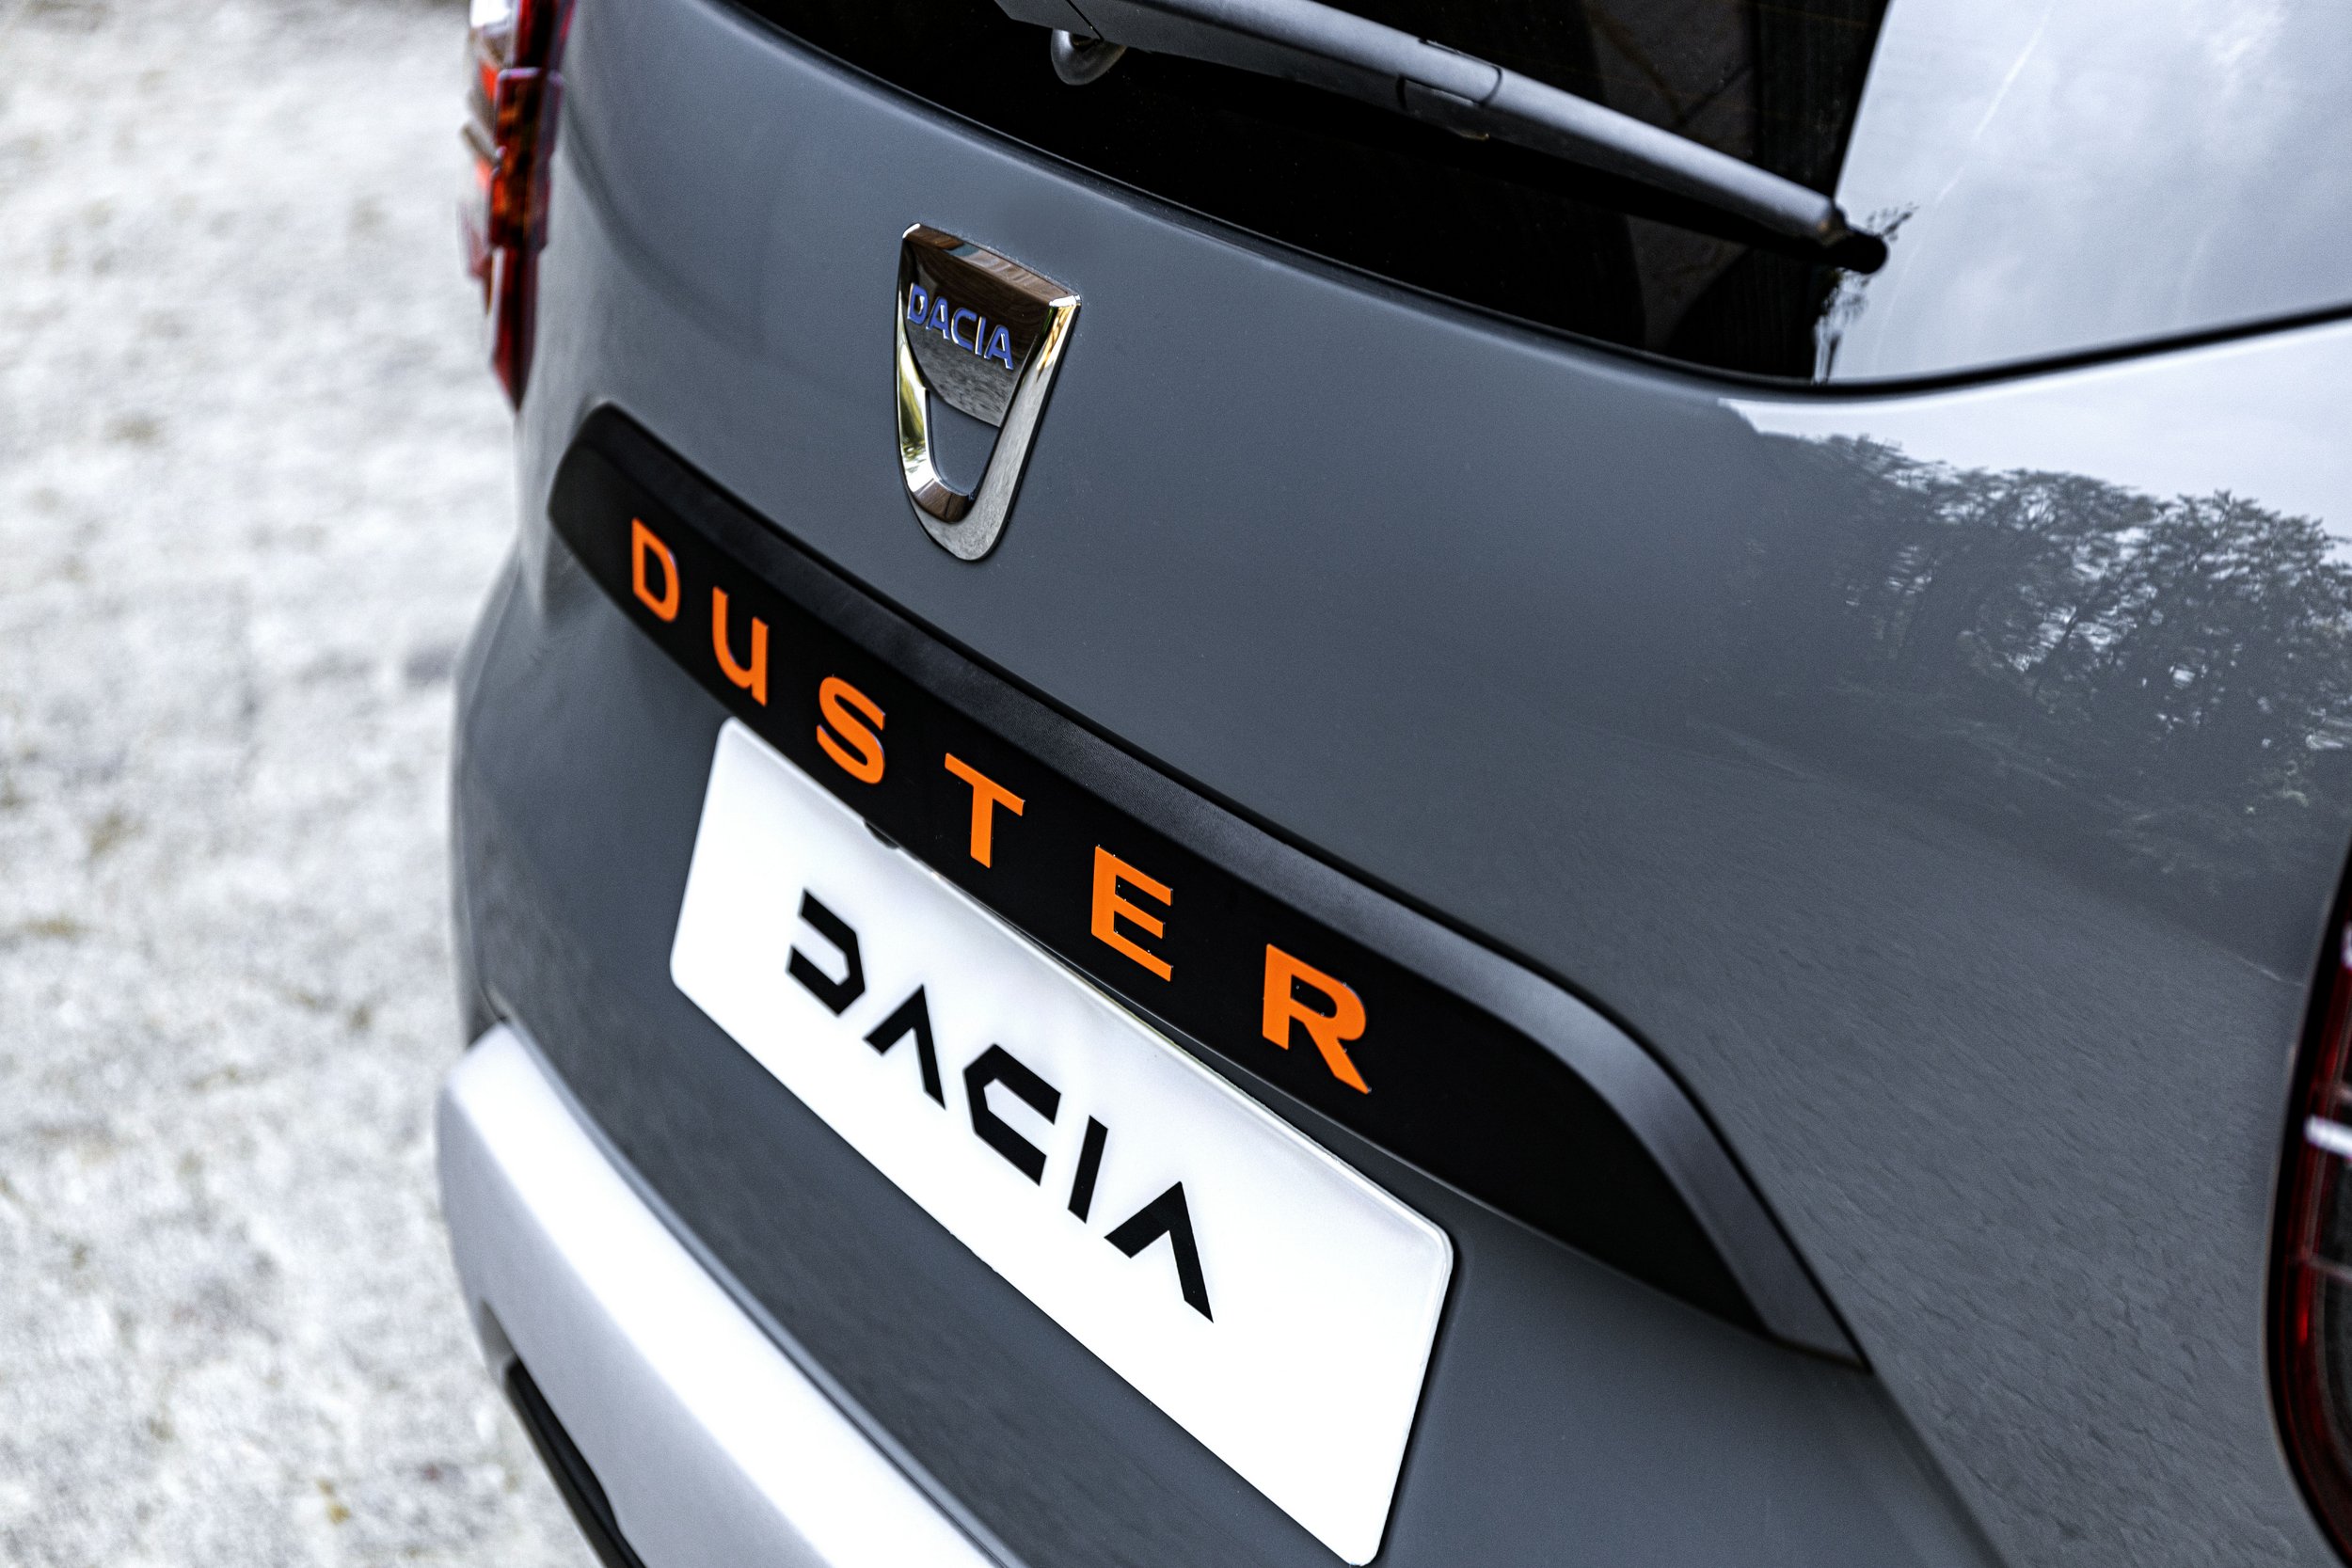 Extrém kivitellel lép át 2022-be a Dacia Duster 18